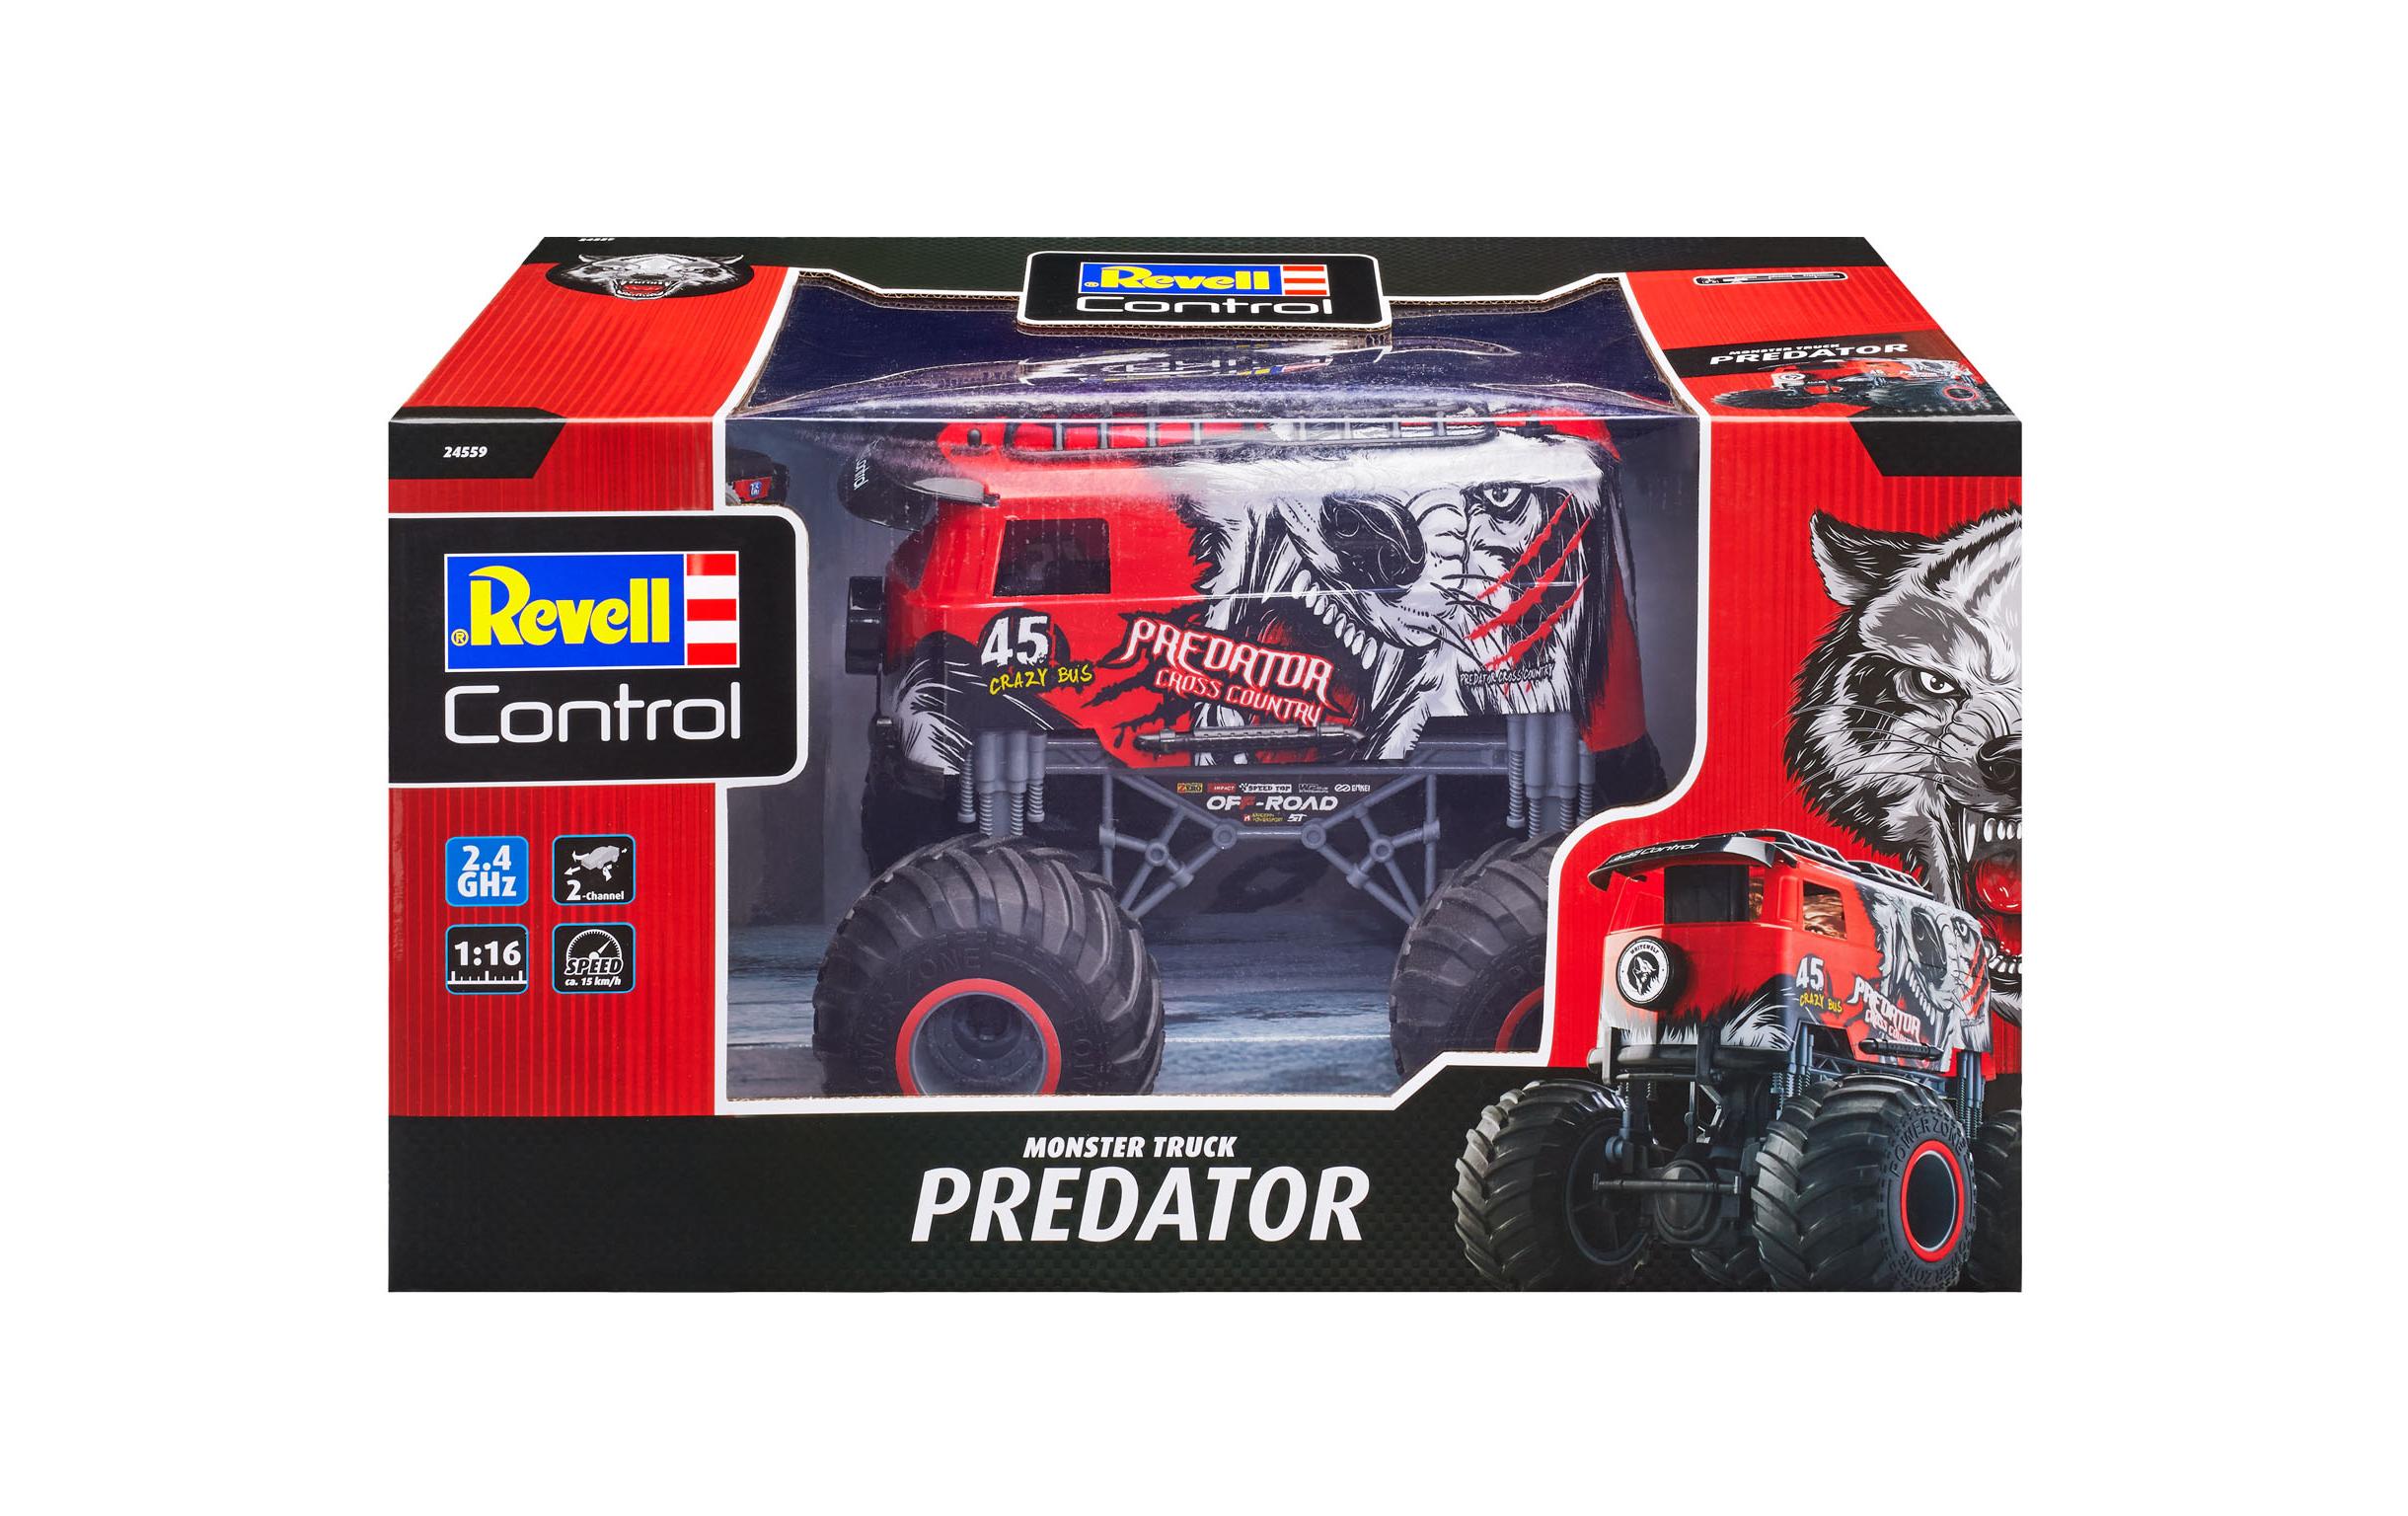 Revell Control Monster Truck Predator RTR, 1:16